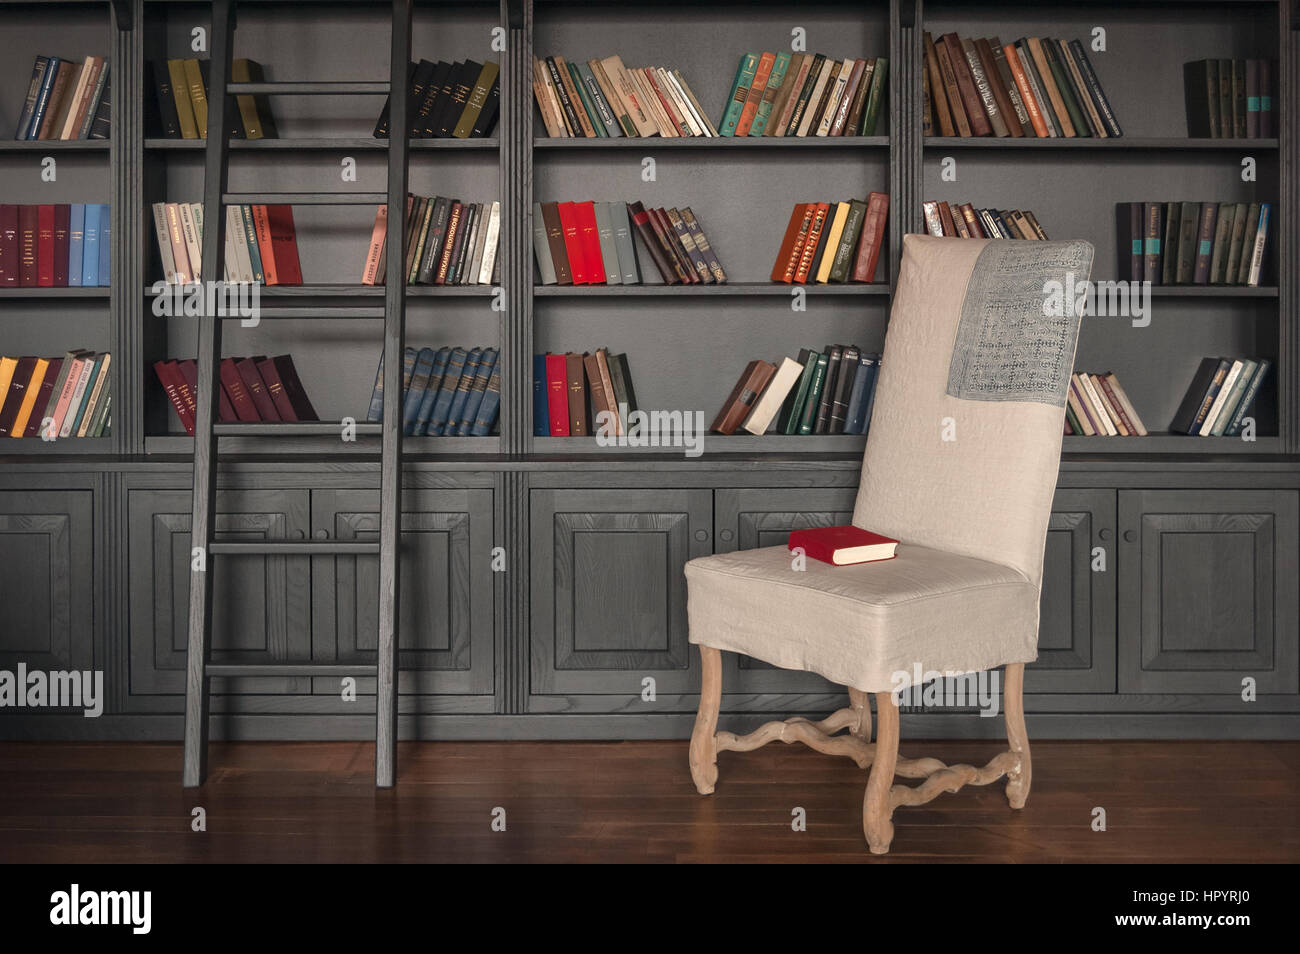 Home Bibliothekszimmer mit grauen Holzregal und farbigen Bücher in den Regalen, Holztreppen und weißen Stuhl mit roten Buch darüber. Stockfoto